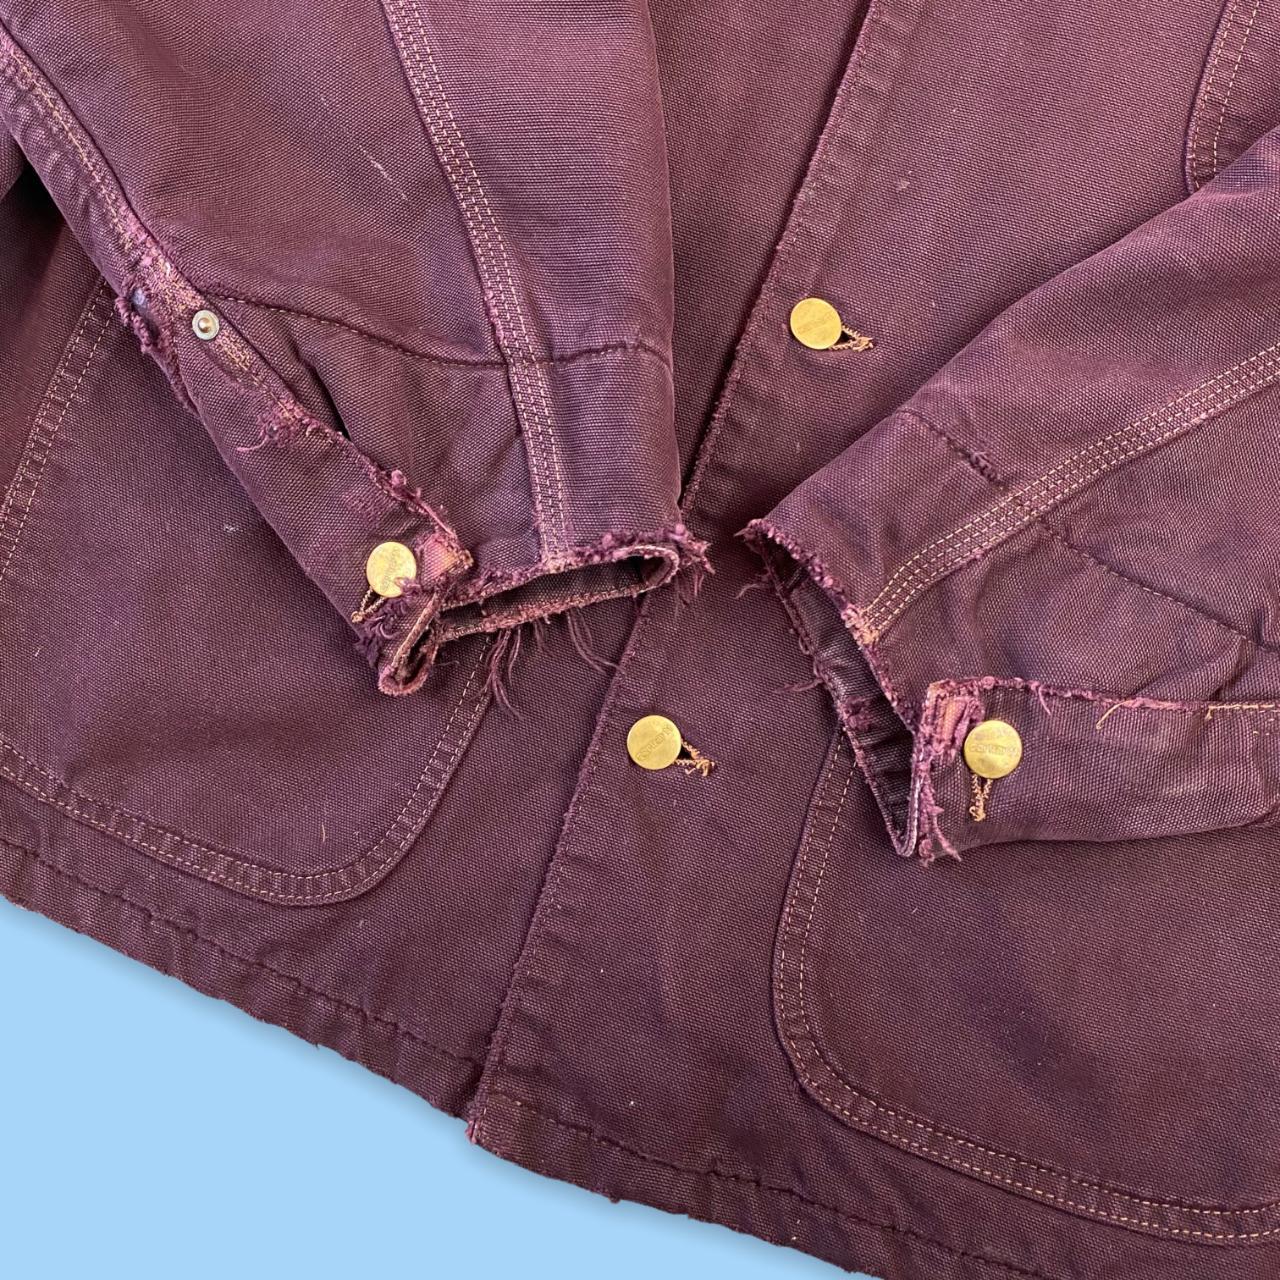 Vintage Carhartt Chore Jacket in burgundy / Maroon.... - Depop